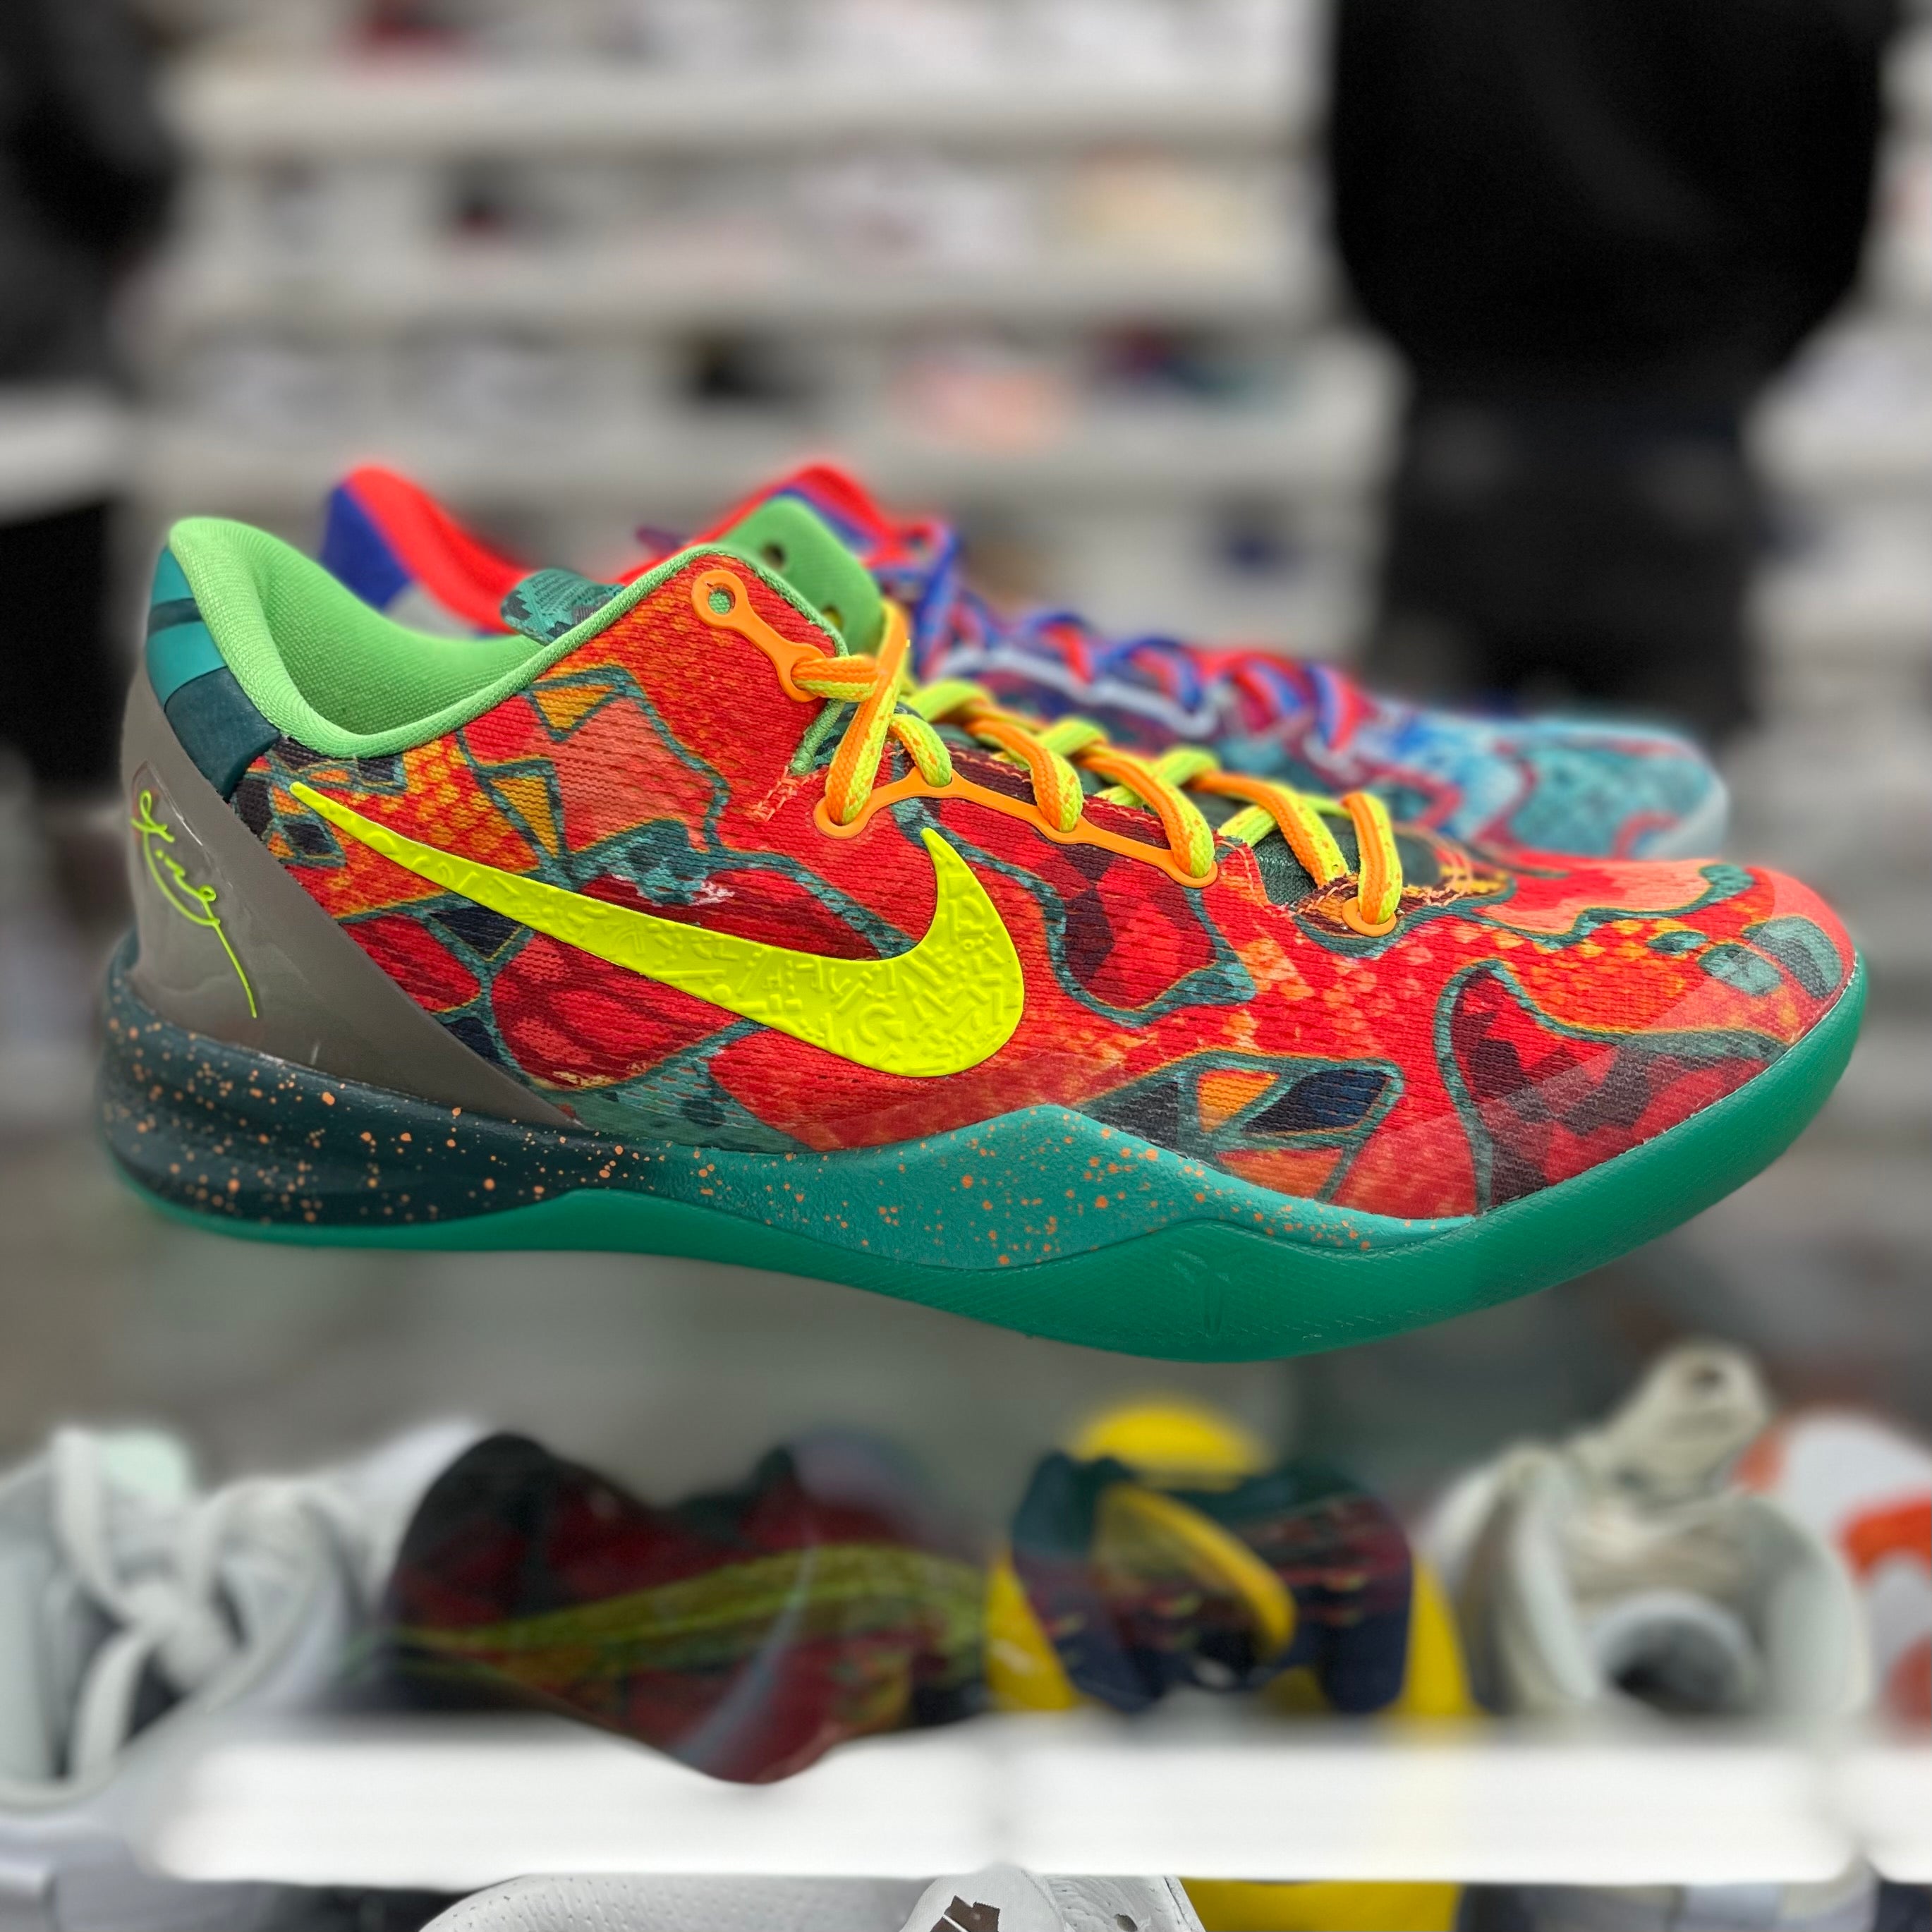 Nike Kobe 8 “What The”